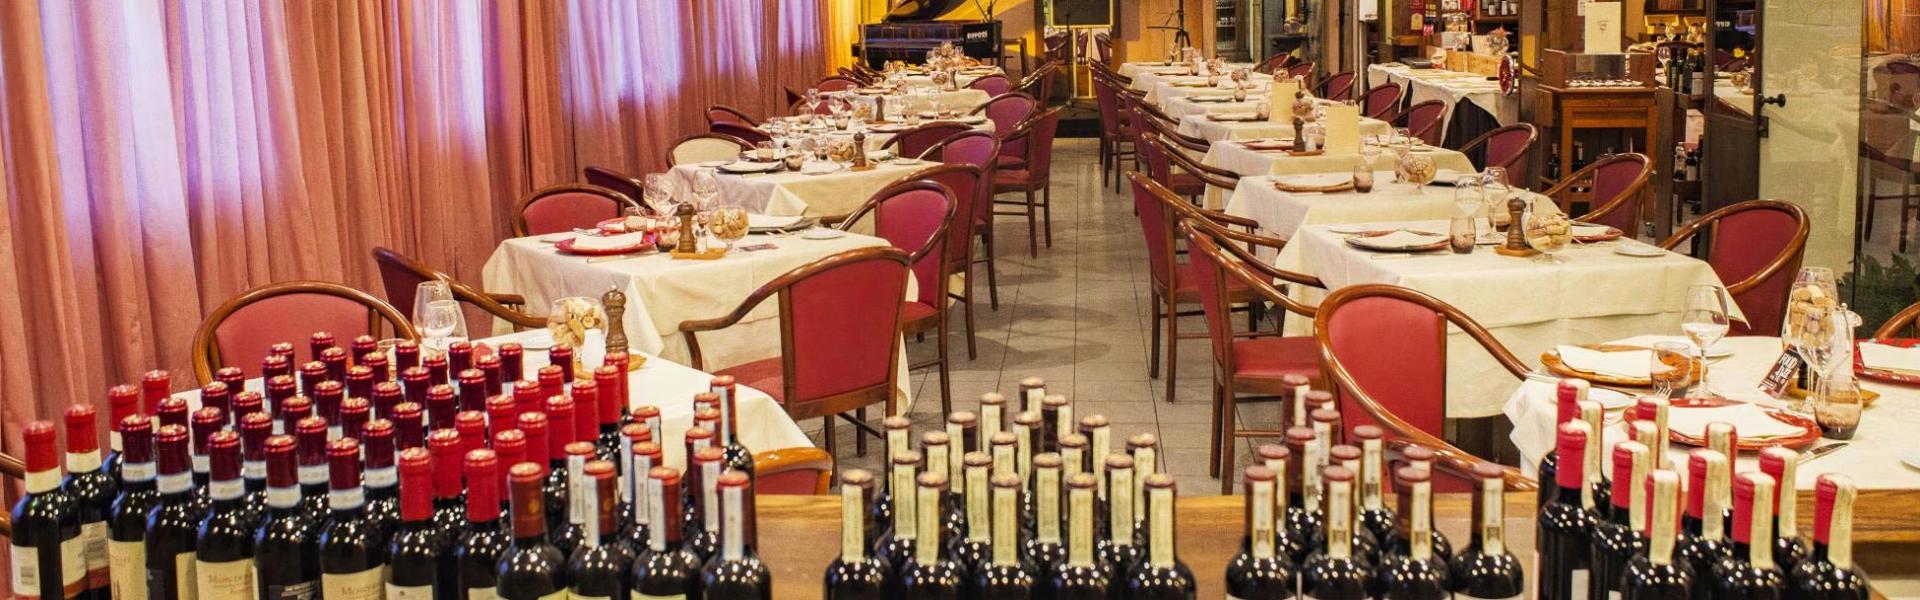 hotelgio it ristorante-enoteca-gio-arte-e-vini-perugia 004